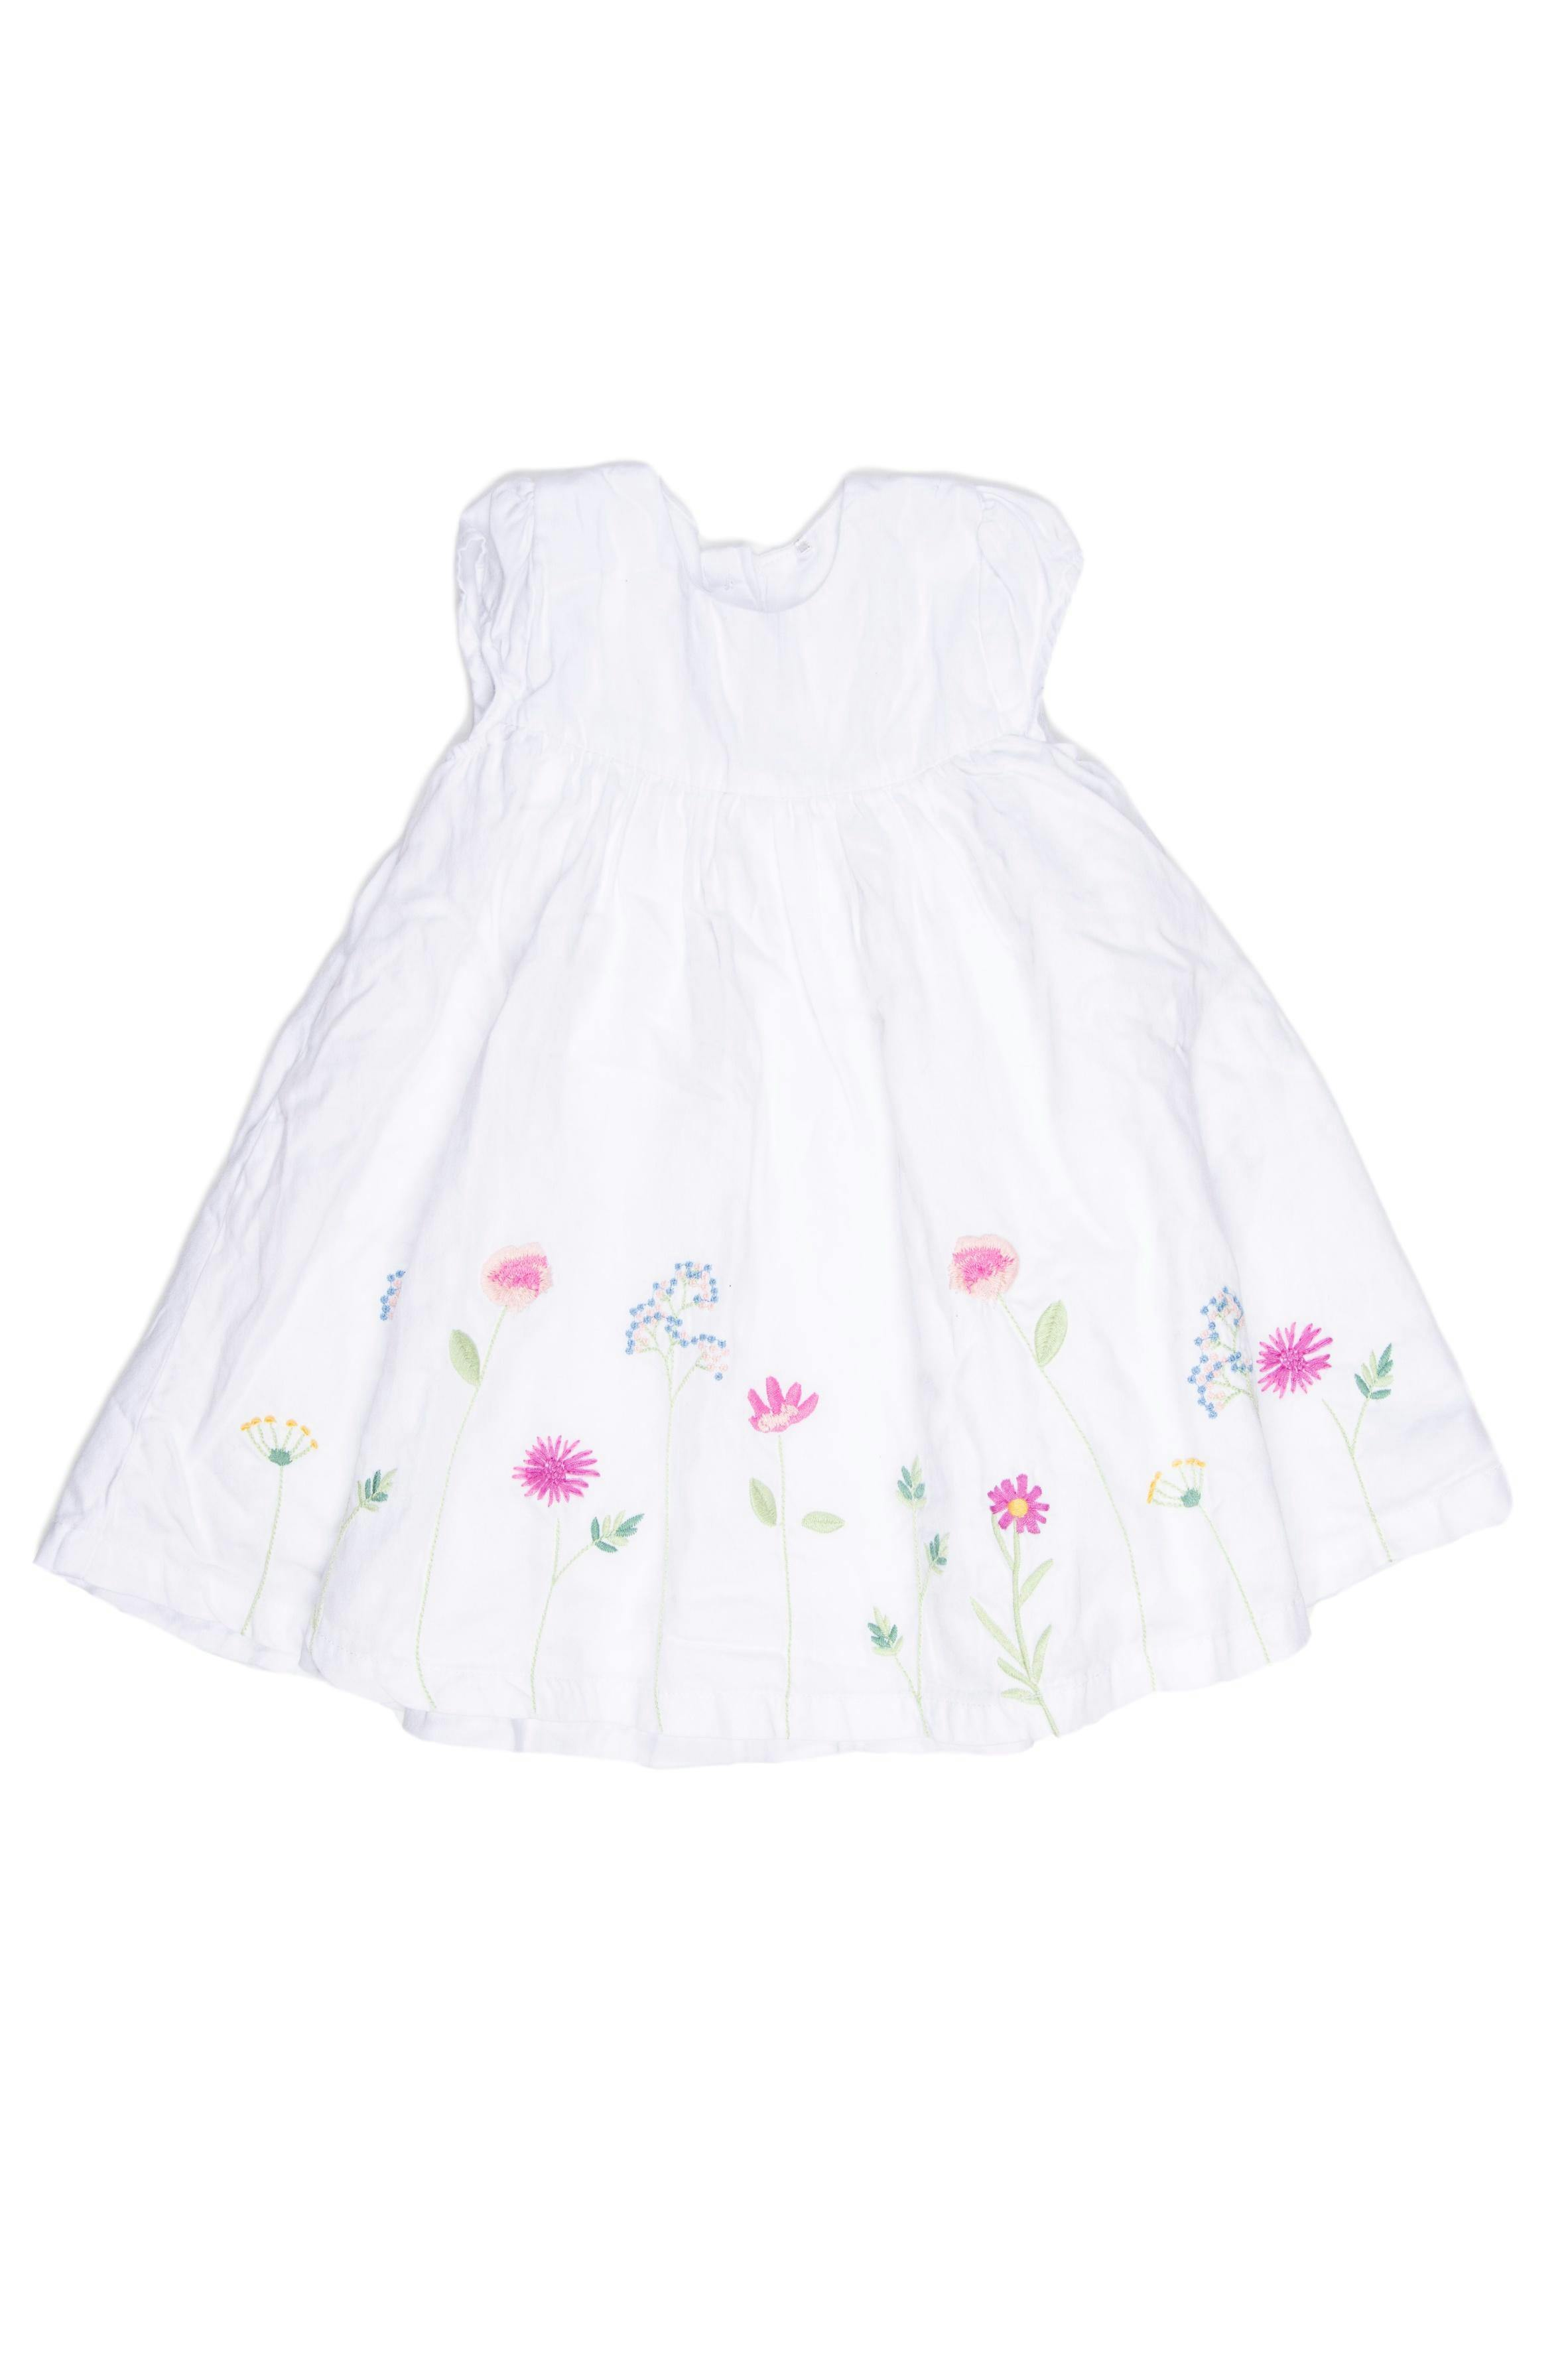 Vestido blanco con flores bordadas, forrado, 100% algodón. Viene con calzoncito de algodón estampado en juego. - Mothercare